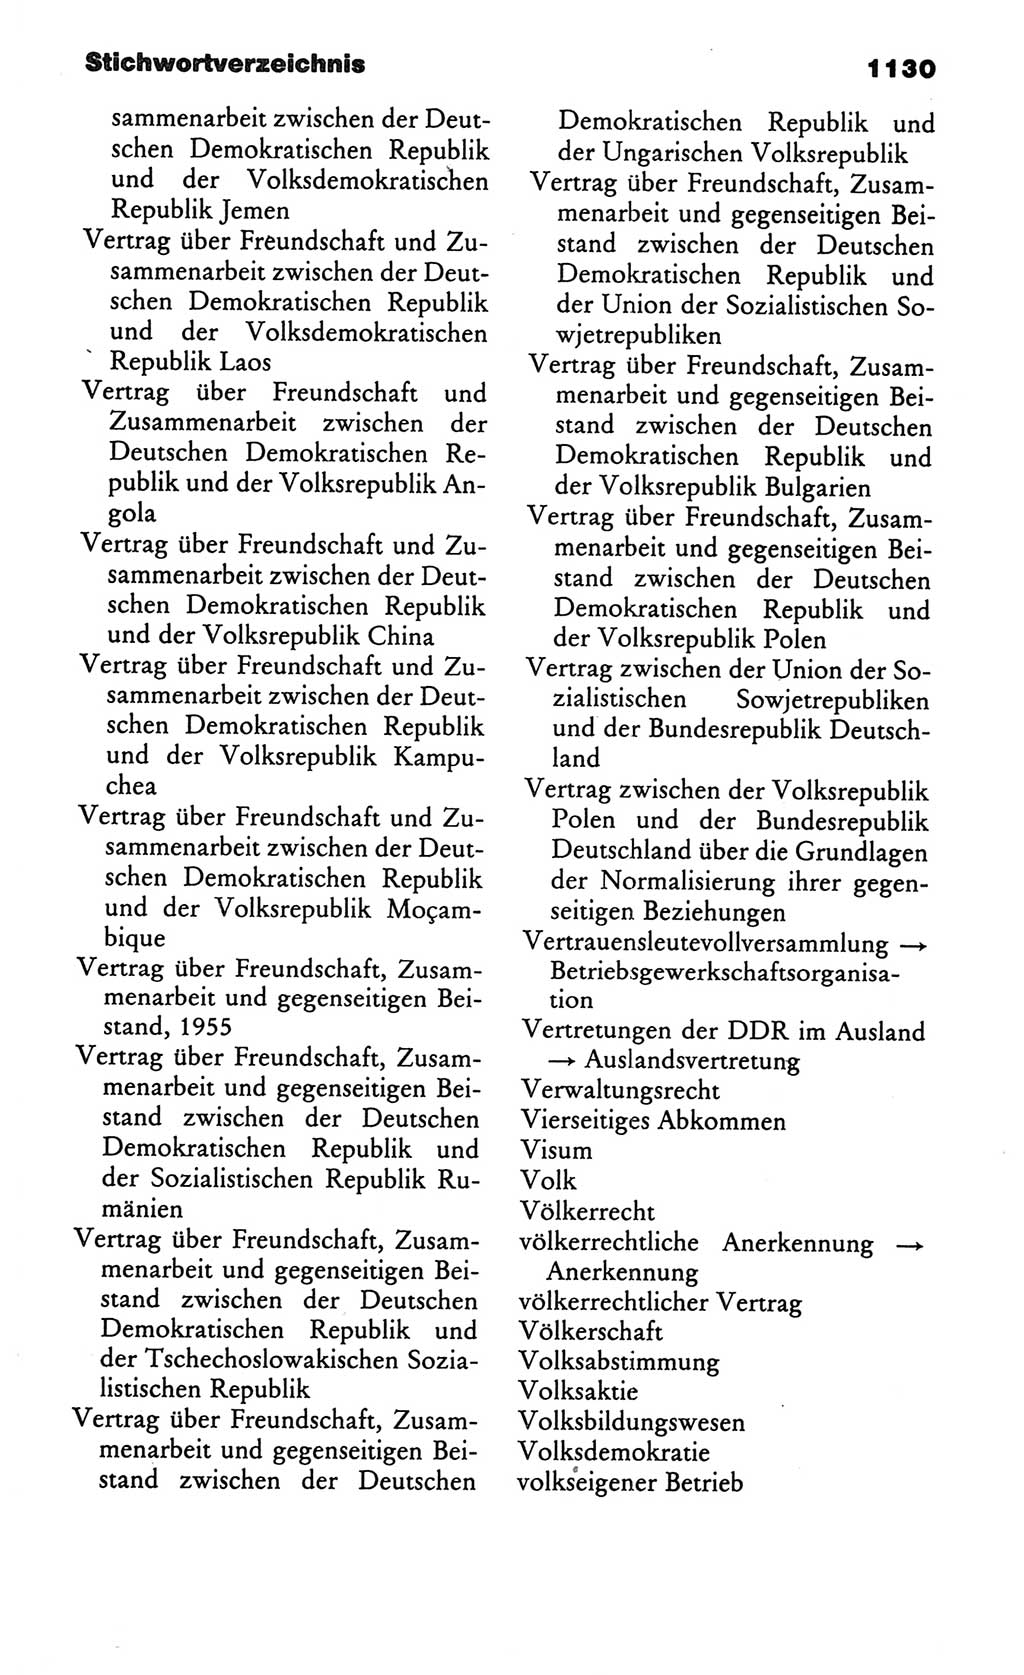 Kleines politisches Wörterbuch [Deutsche Demokratische Republik (DDR)] 1986, Seite 1130 (Kl. pol. Wb. DDR 1986, S. 1130)